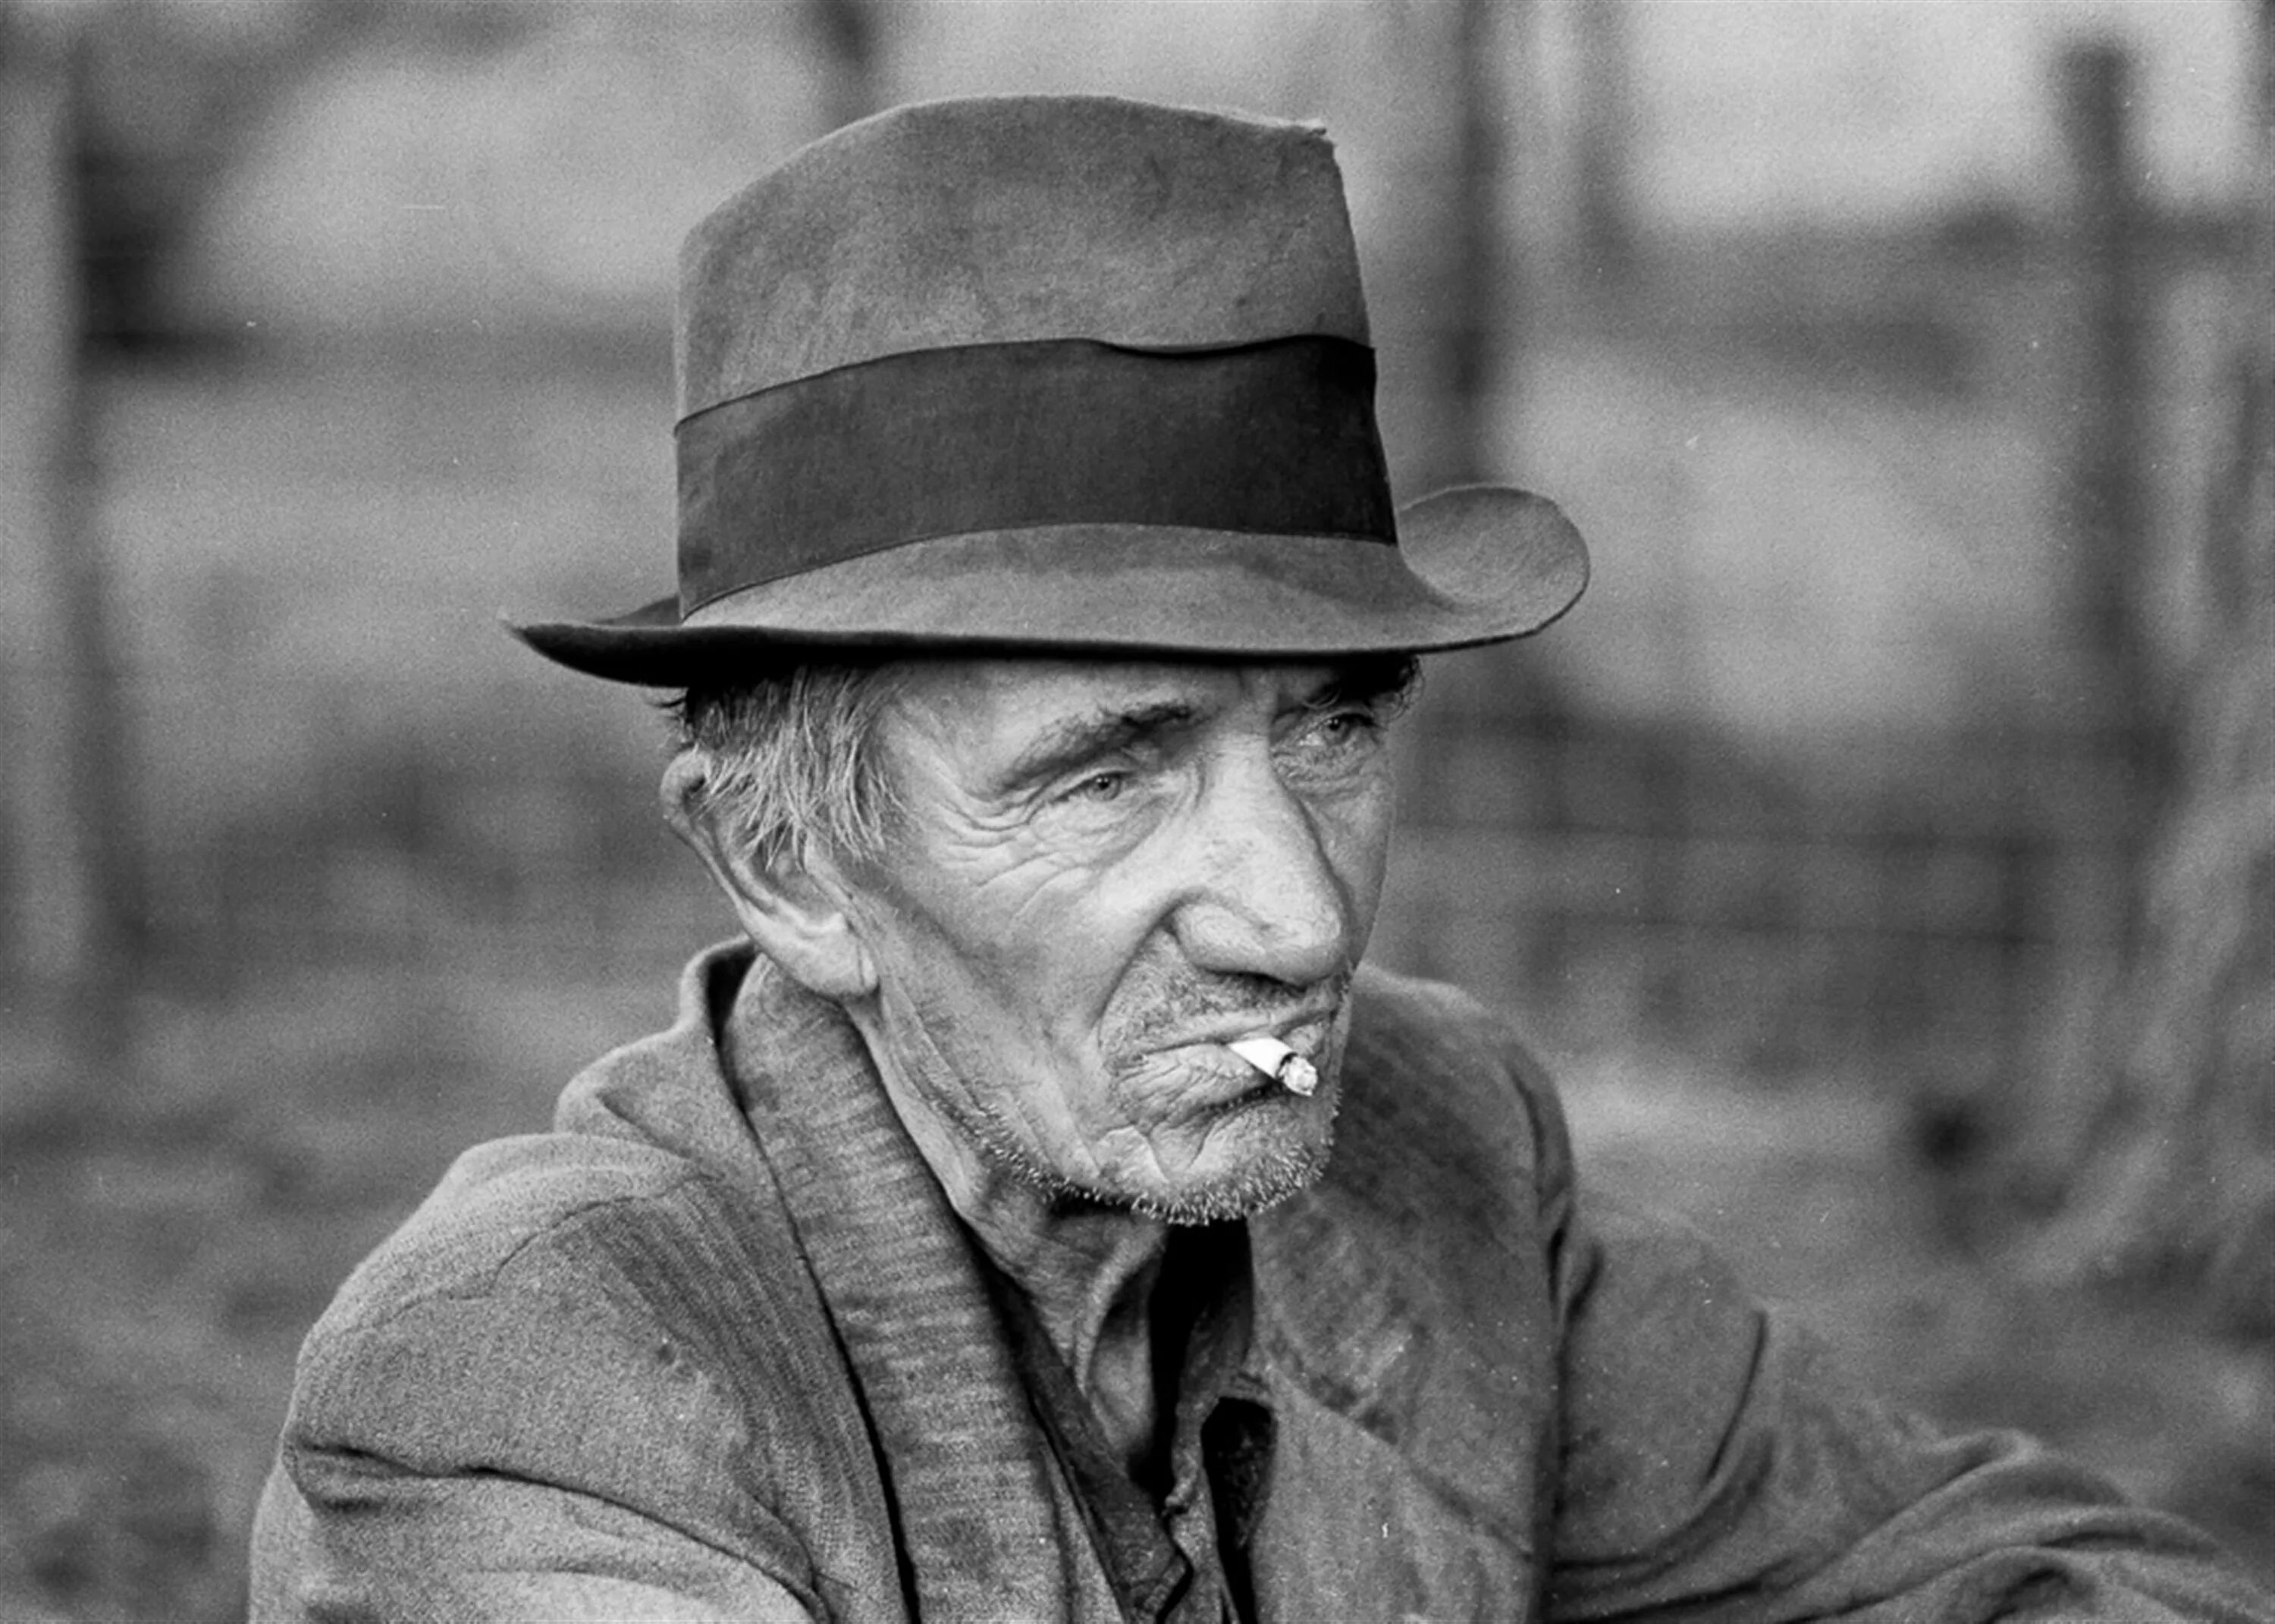 Пожилые мужчины рассказ. Килгор Траут Курт Воннегут. Пожилой мужчина в шляпе. Старые портреты. Портрет пожилого мужчины.